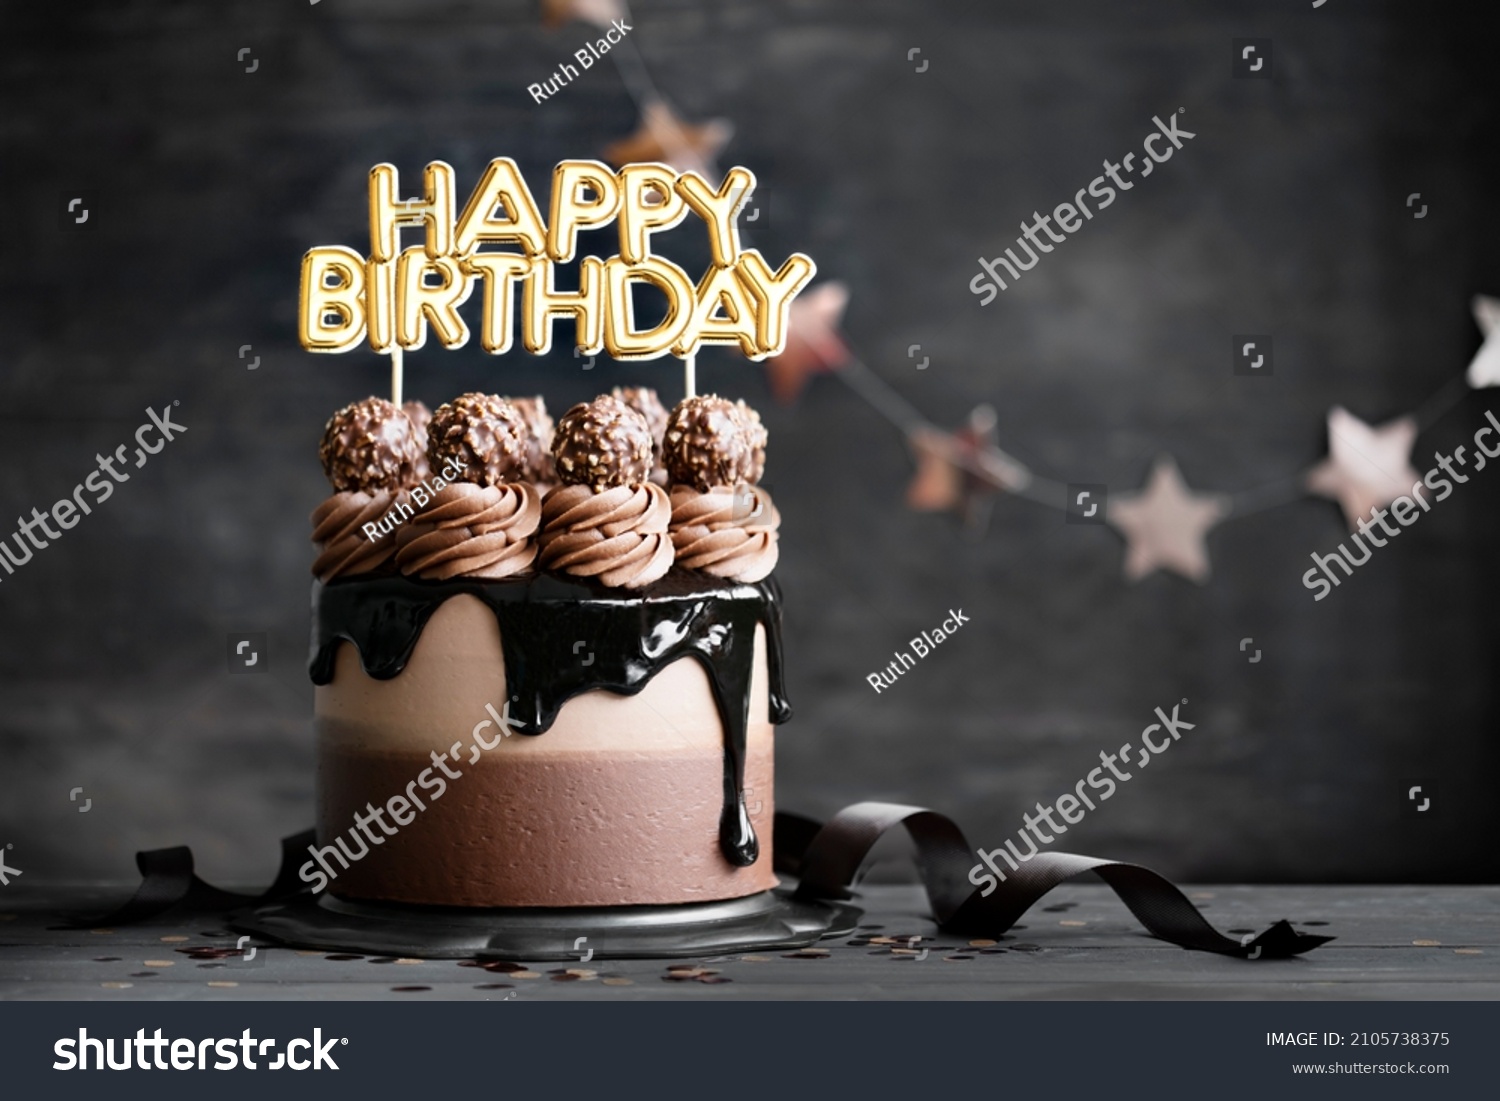 Chocolate birthday cake with  chocolate ganache drip icing and happy birthday banner #2105738375